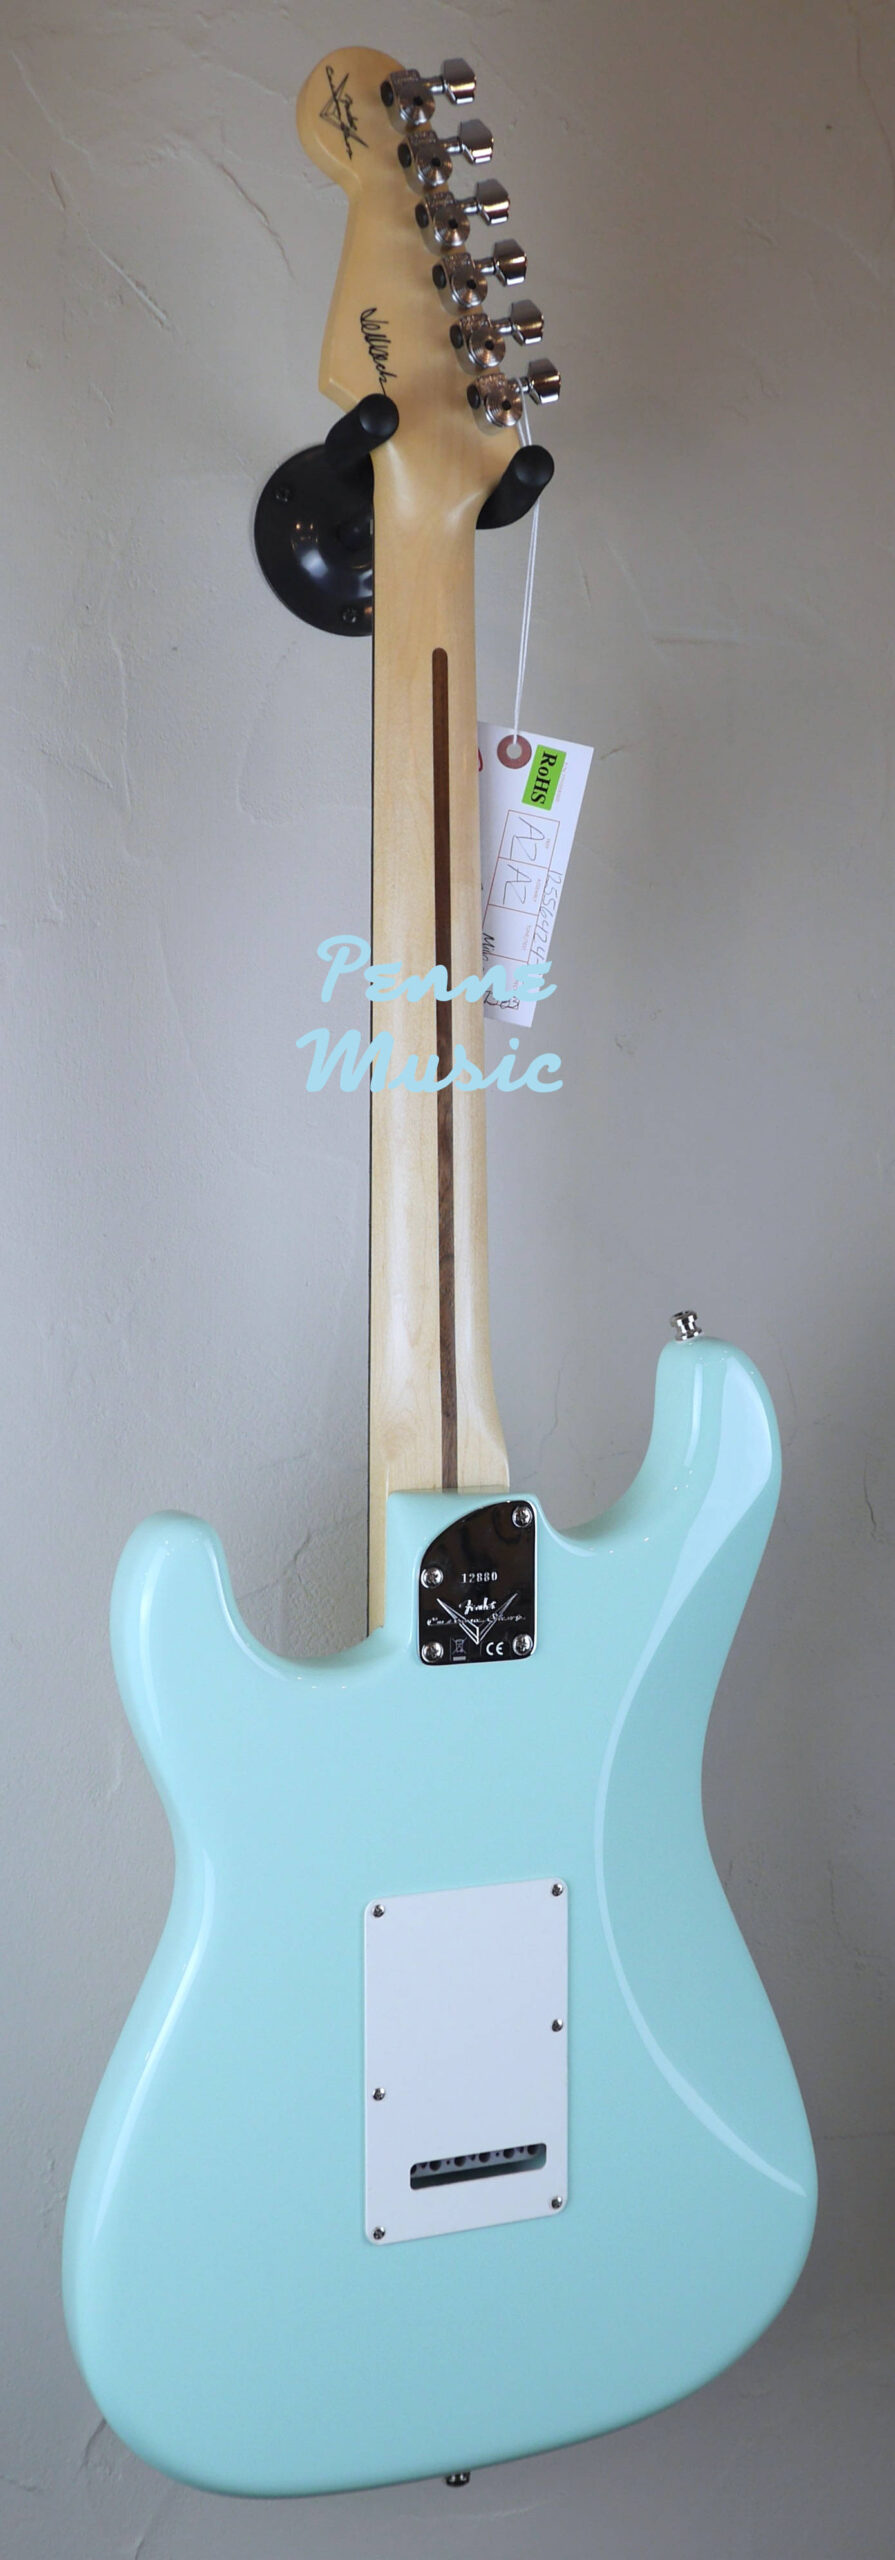 Fender Custom Shop Jeff Beck Stratocaster Surf Green 3